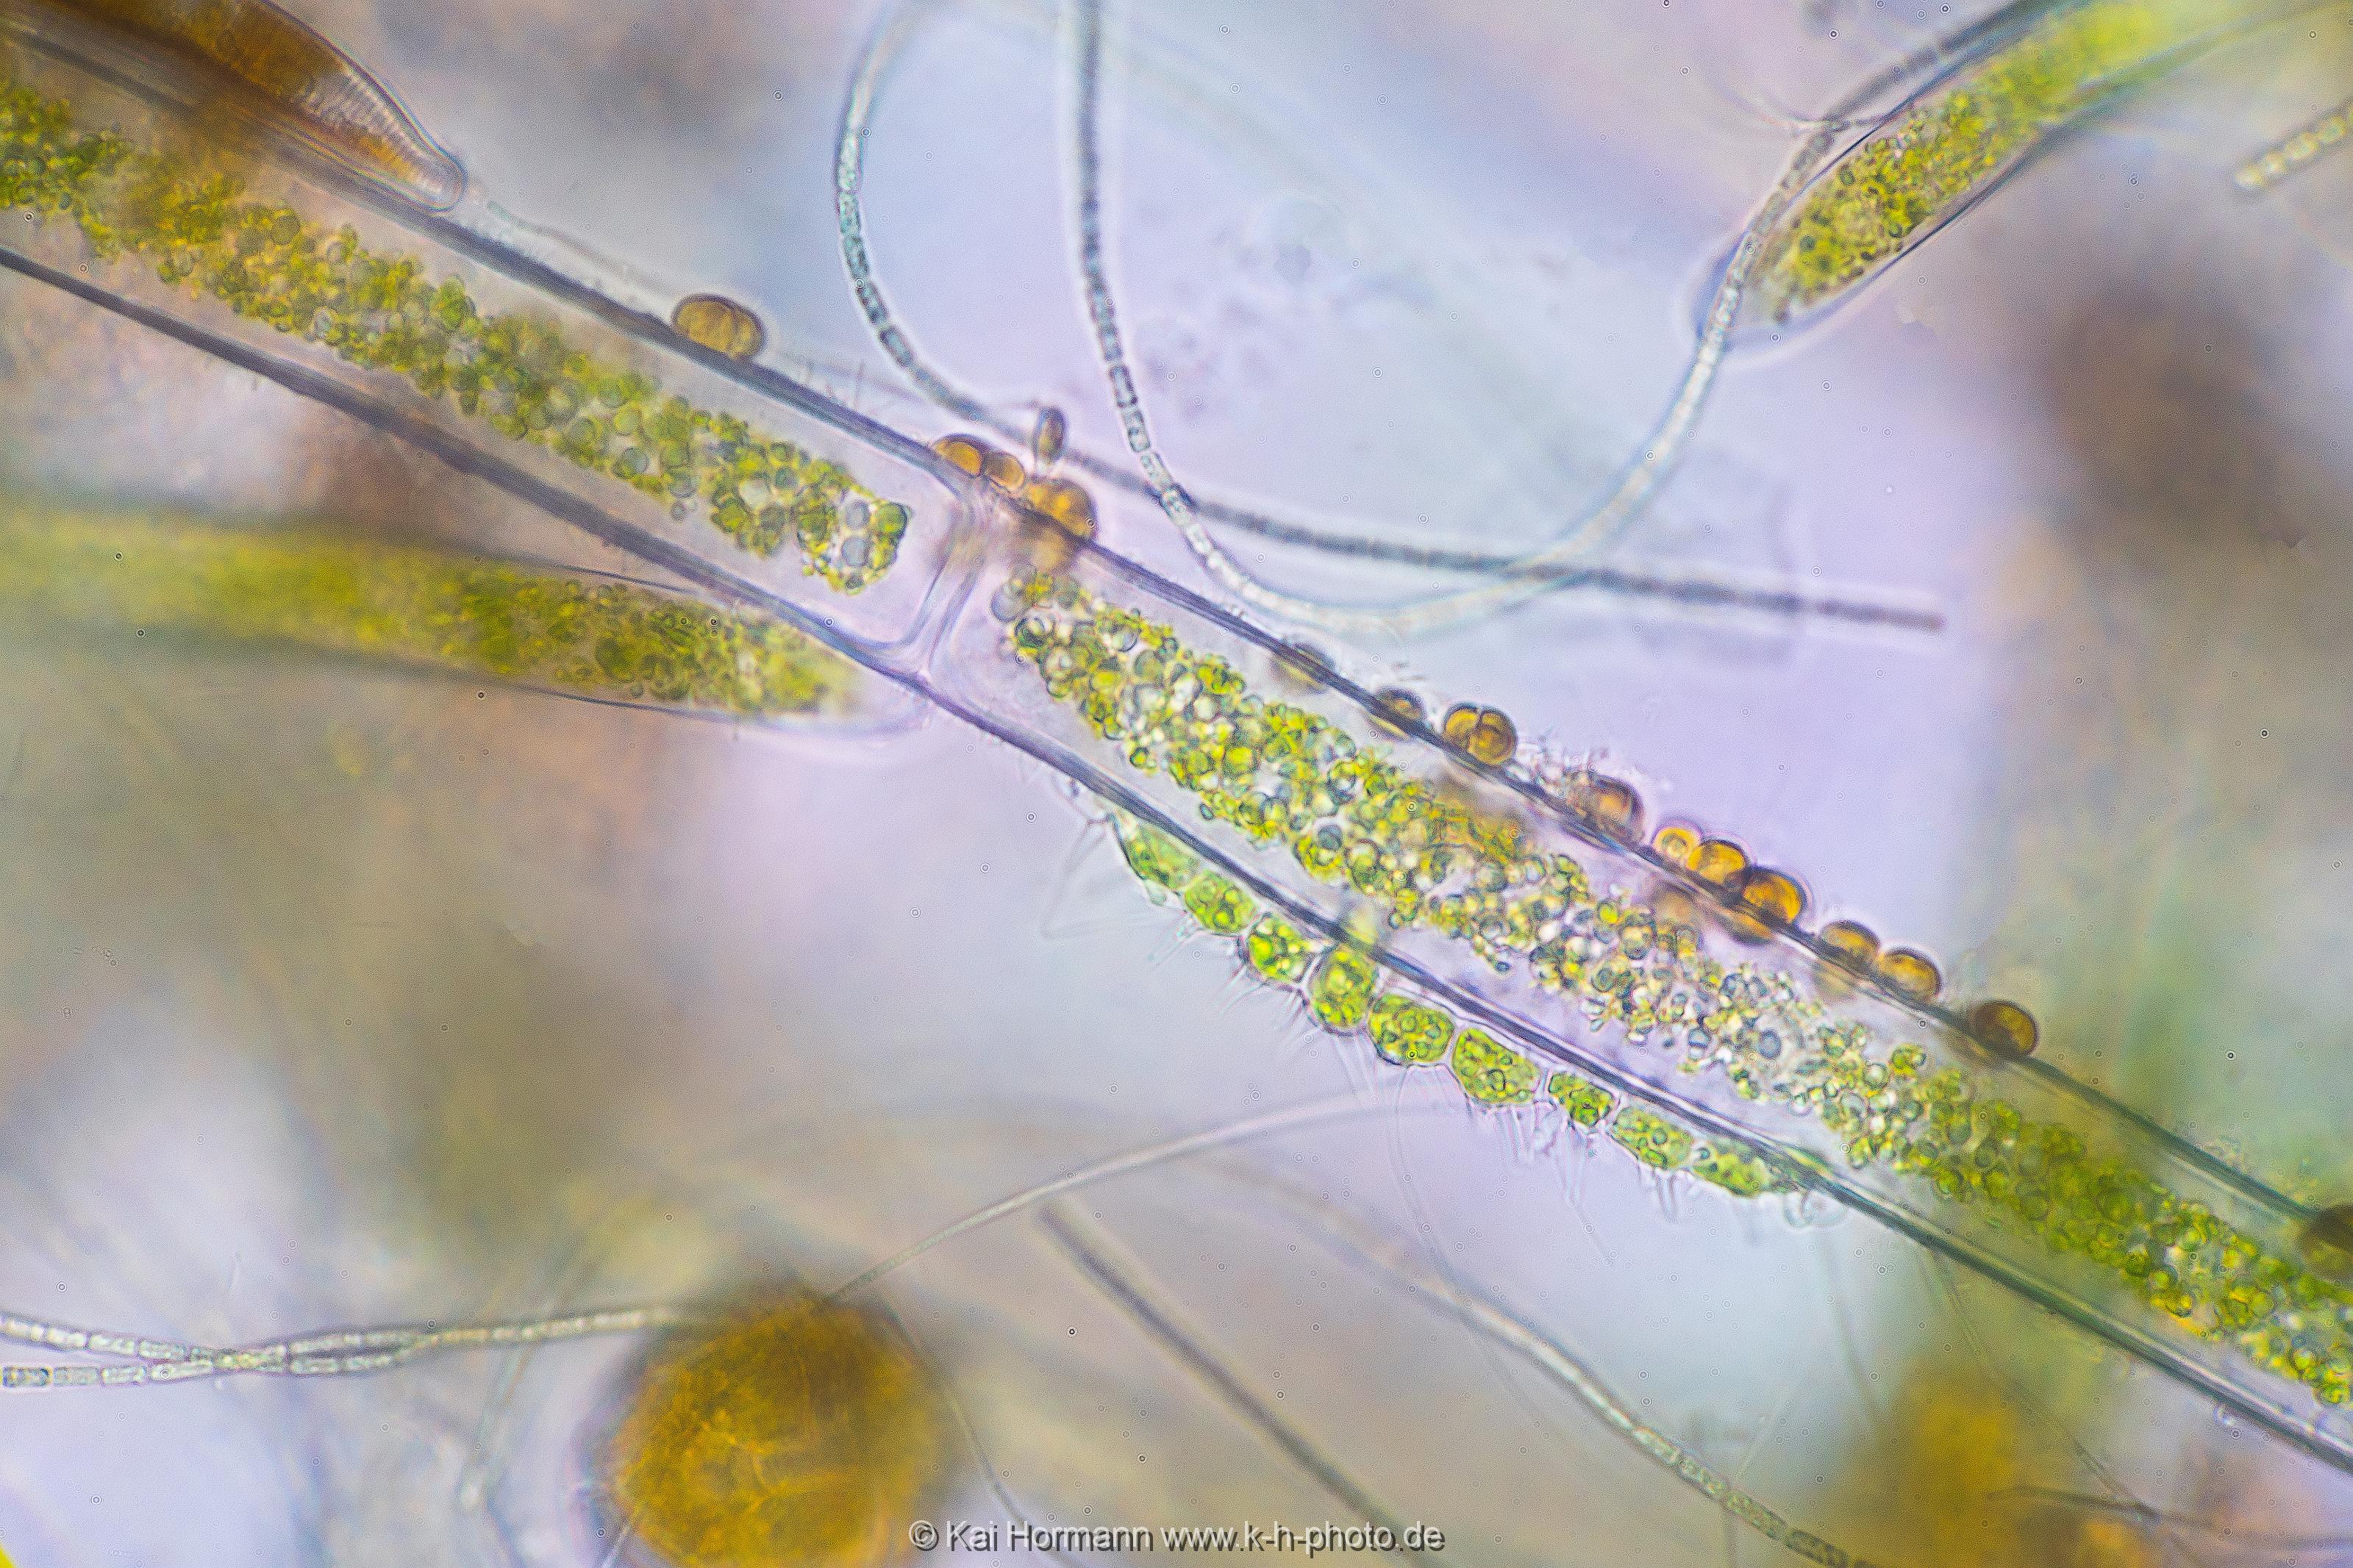 Goldalgen auf Faden-Grünalge. Mikrofotografie: Mikroskopische Aufnahmen von Einzellern, Algen und Kleinstlebewesen.